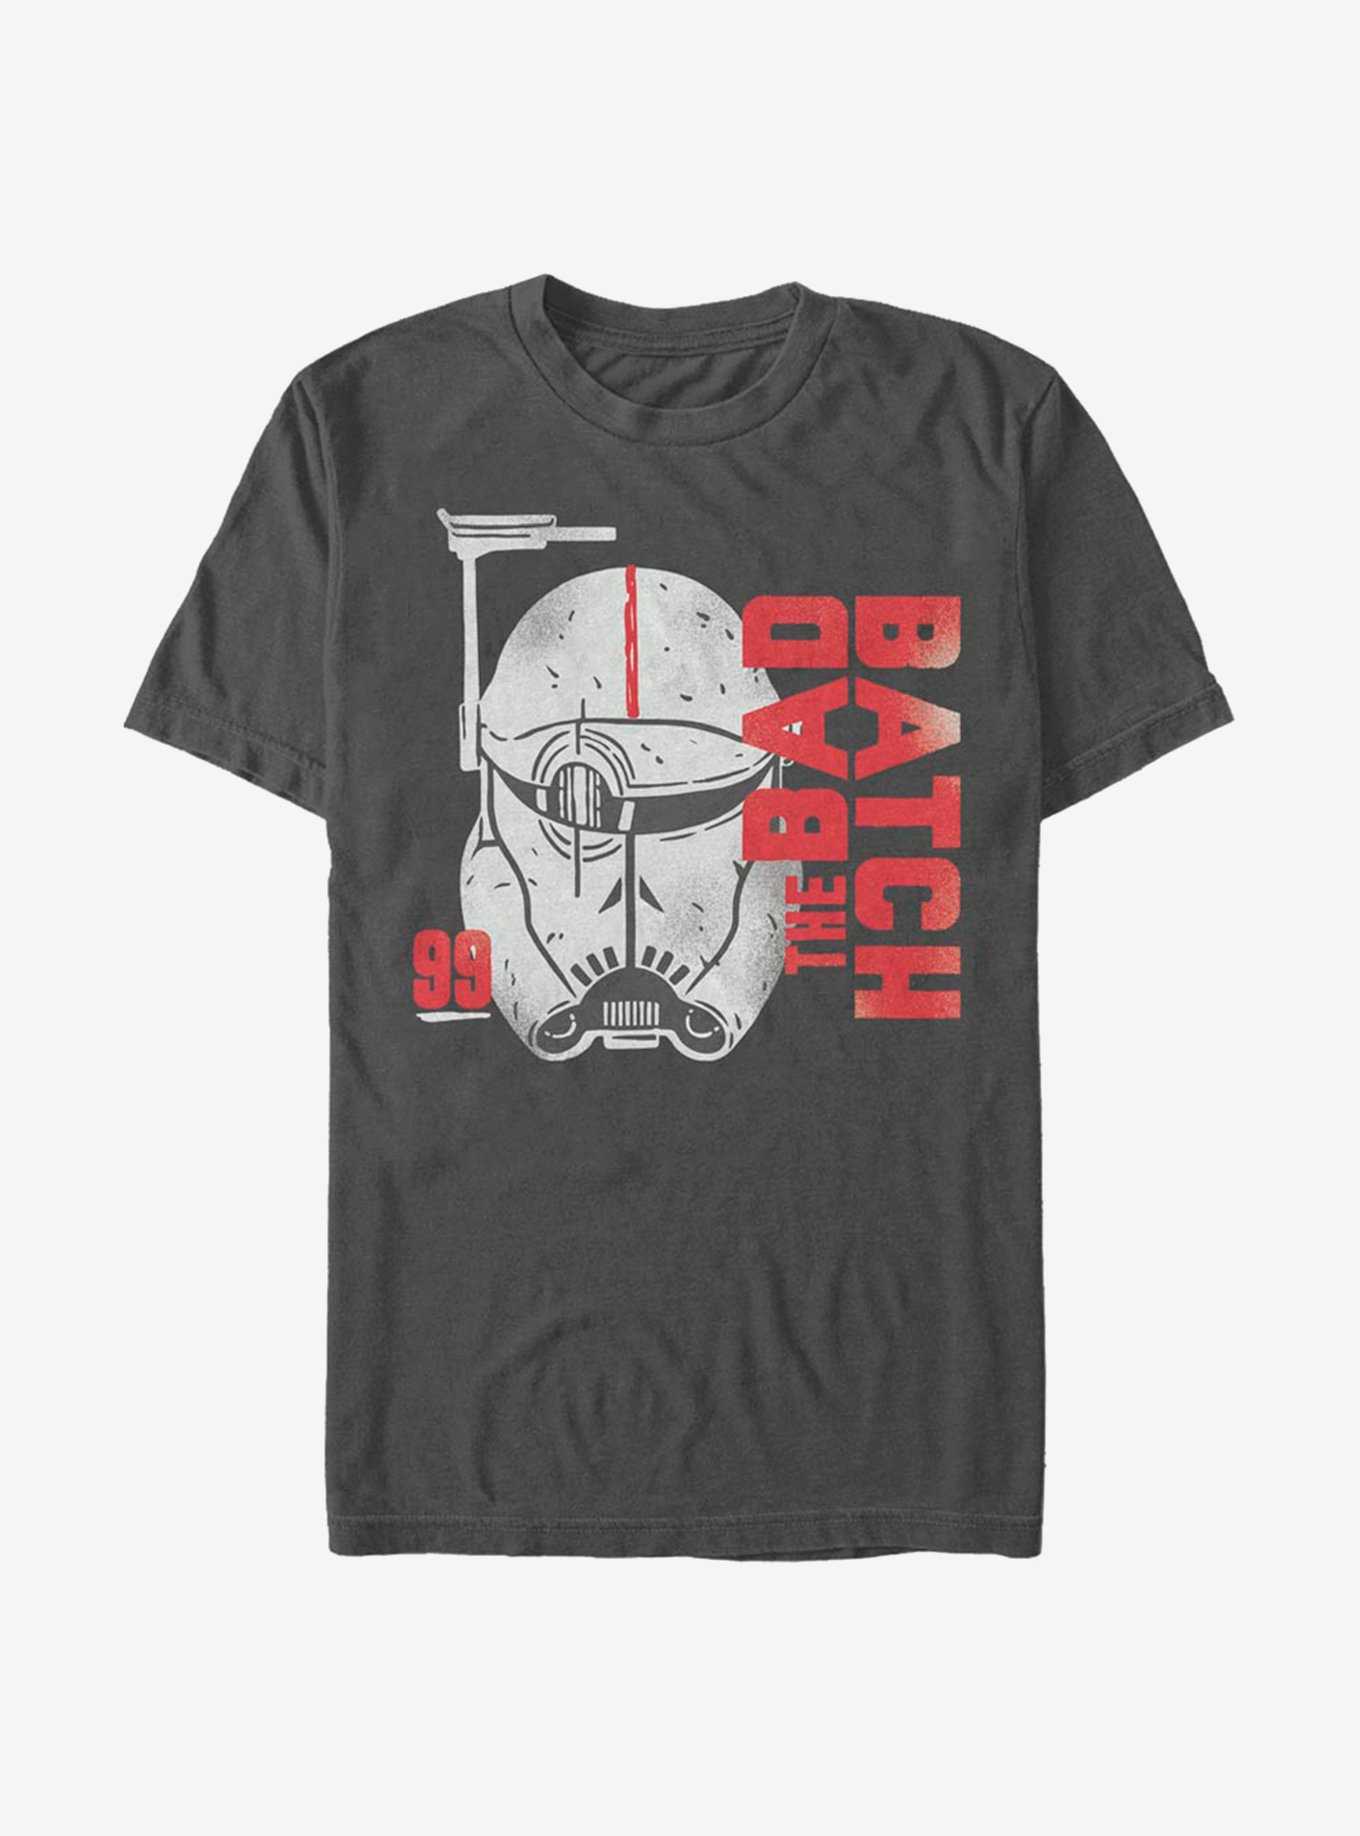 Star Wars: The Bad Batch Unit 99 T-Shirt, , hi-res